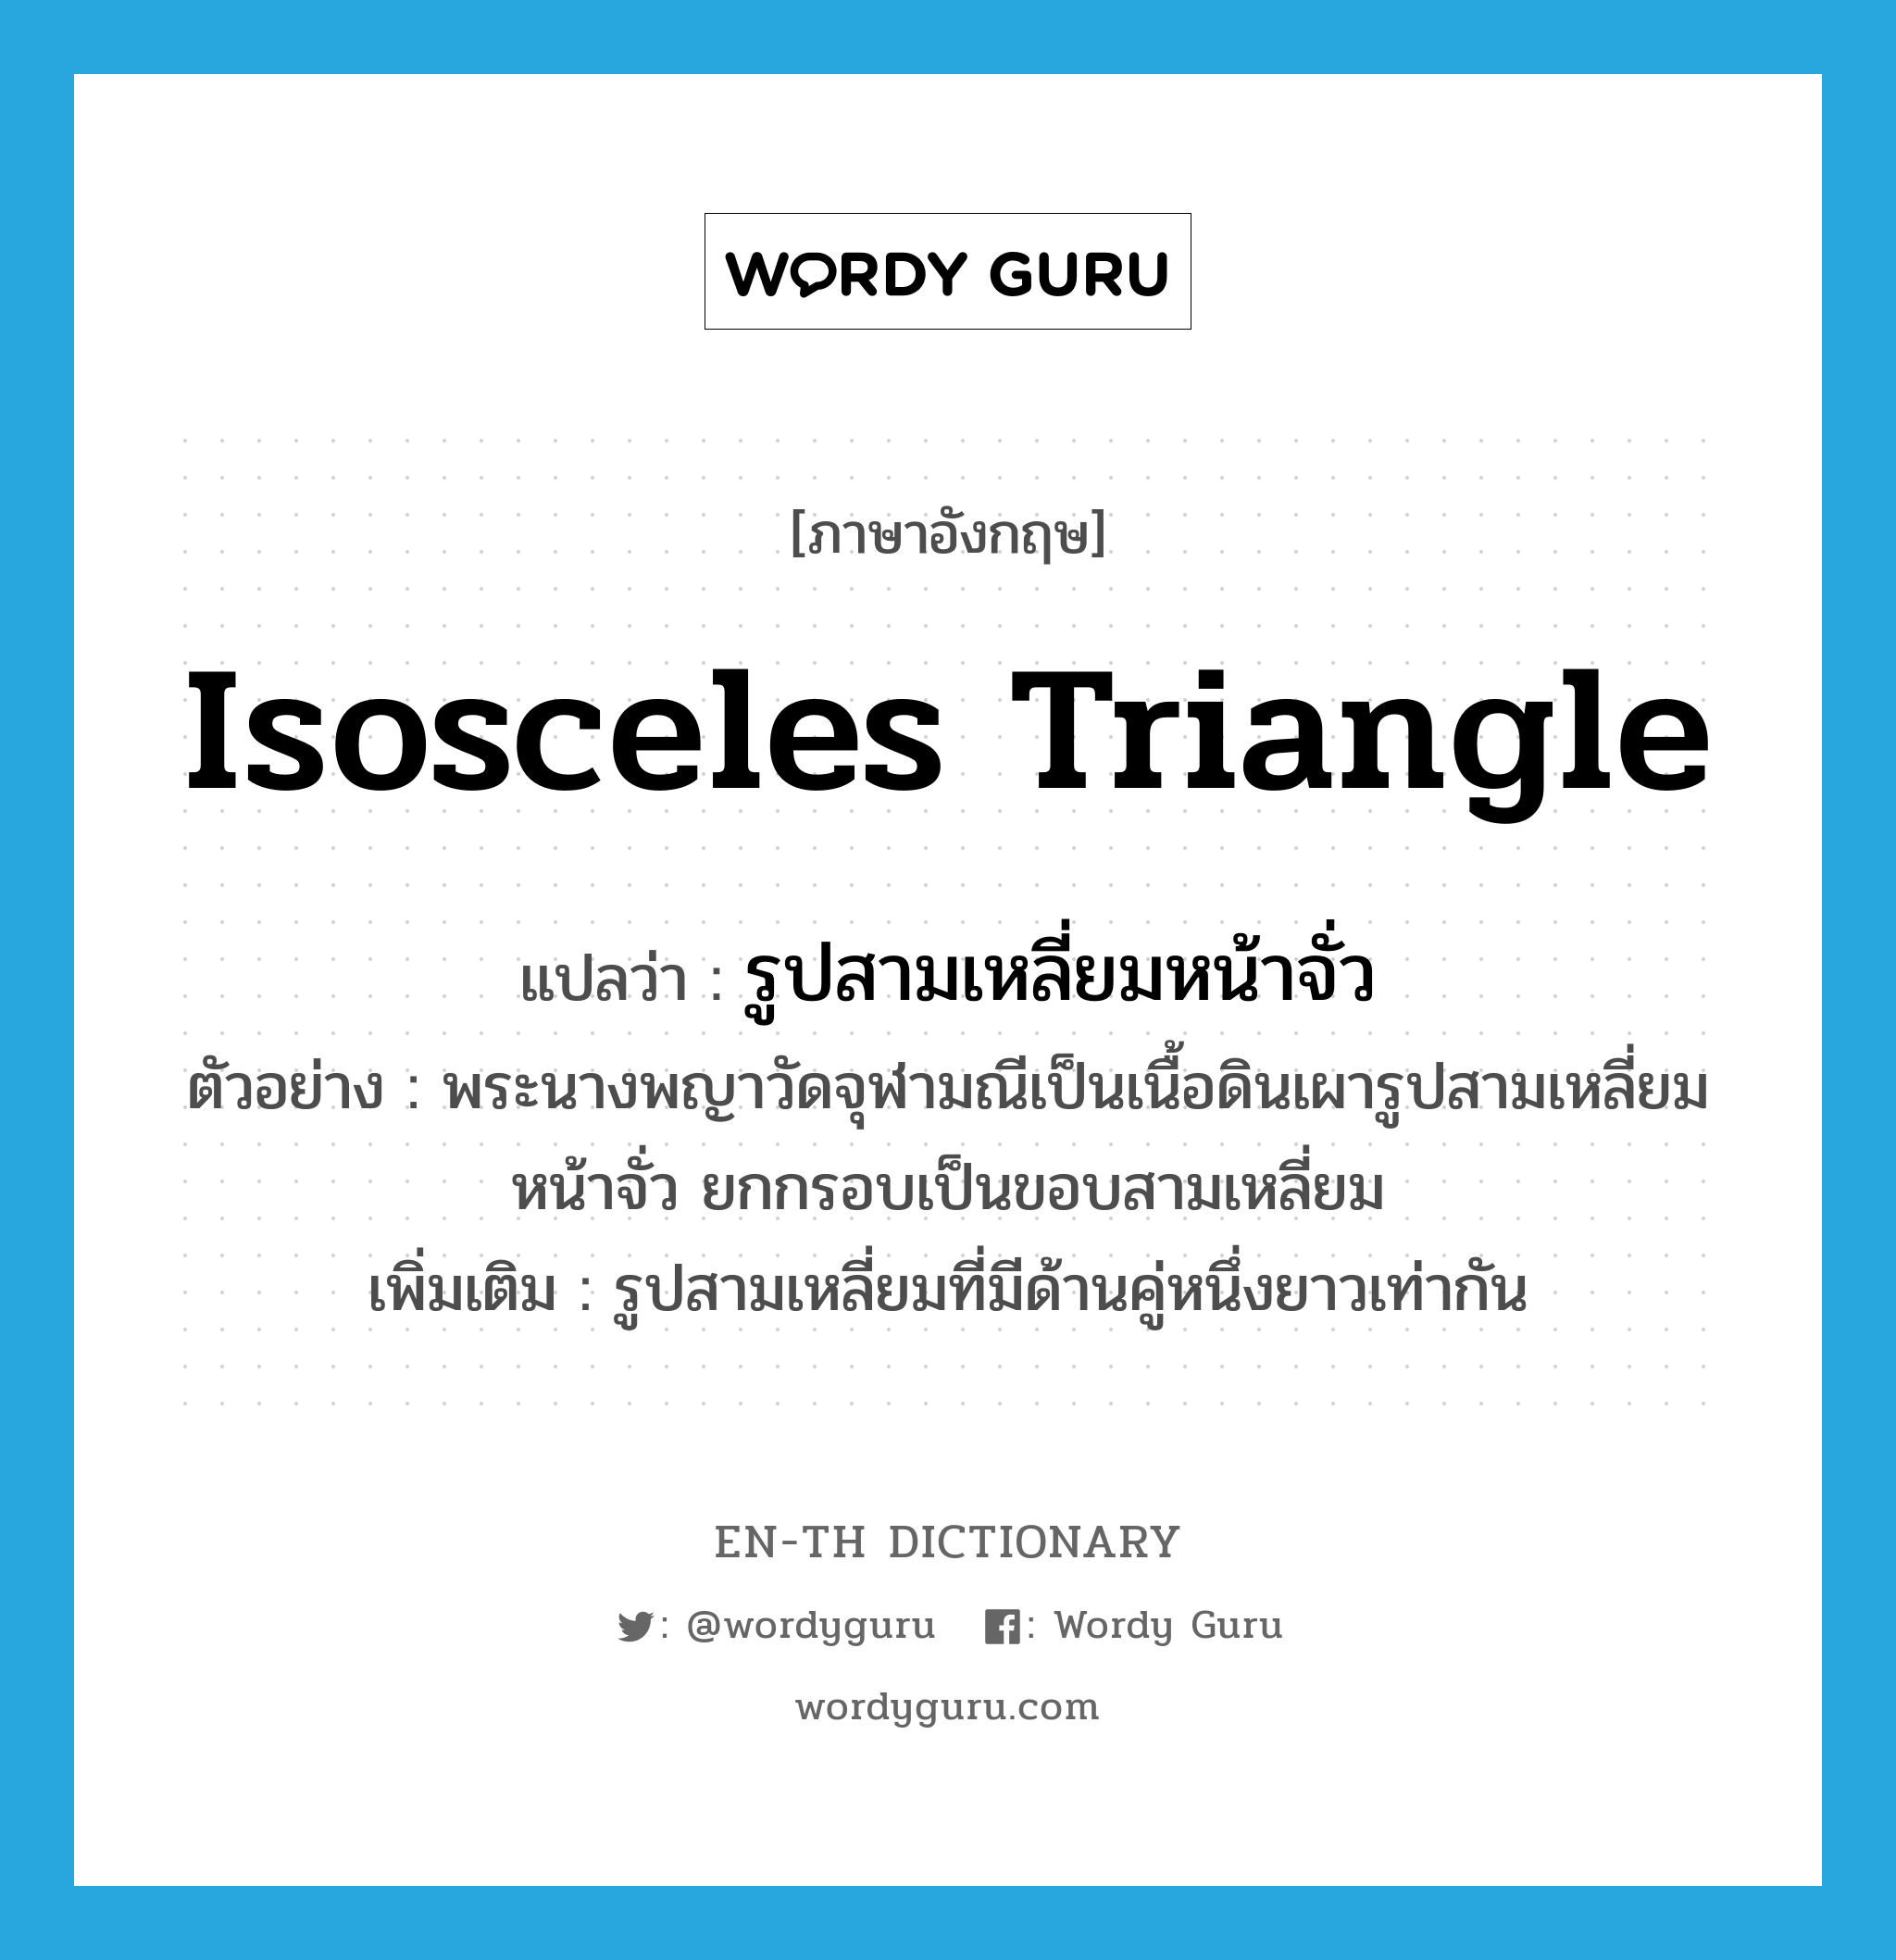 isosceles triangle แปลว่า?, คำศัพท์ภาษาอังกฤษ isosceles triangle แปลว่า รูปสามเหลี่ยมหน้าจั่ว ประเภท N ตัวอย่าง พระนางพญาวัดจุฬามณีเป็นเนื้อดินเผารูปสามเหลี่ยมหน้าจั่ว ยกกรอบเป็นขอบสามเหลี่ยม เพิ่มเติม รูปสามเหลี่ยมที่มีด้านคู่หนึ่งยาวเท่ากัน หมวด N